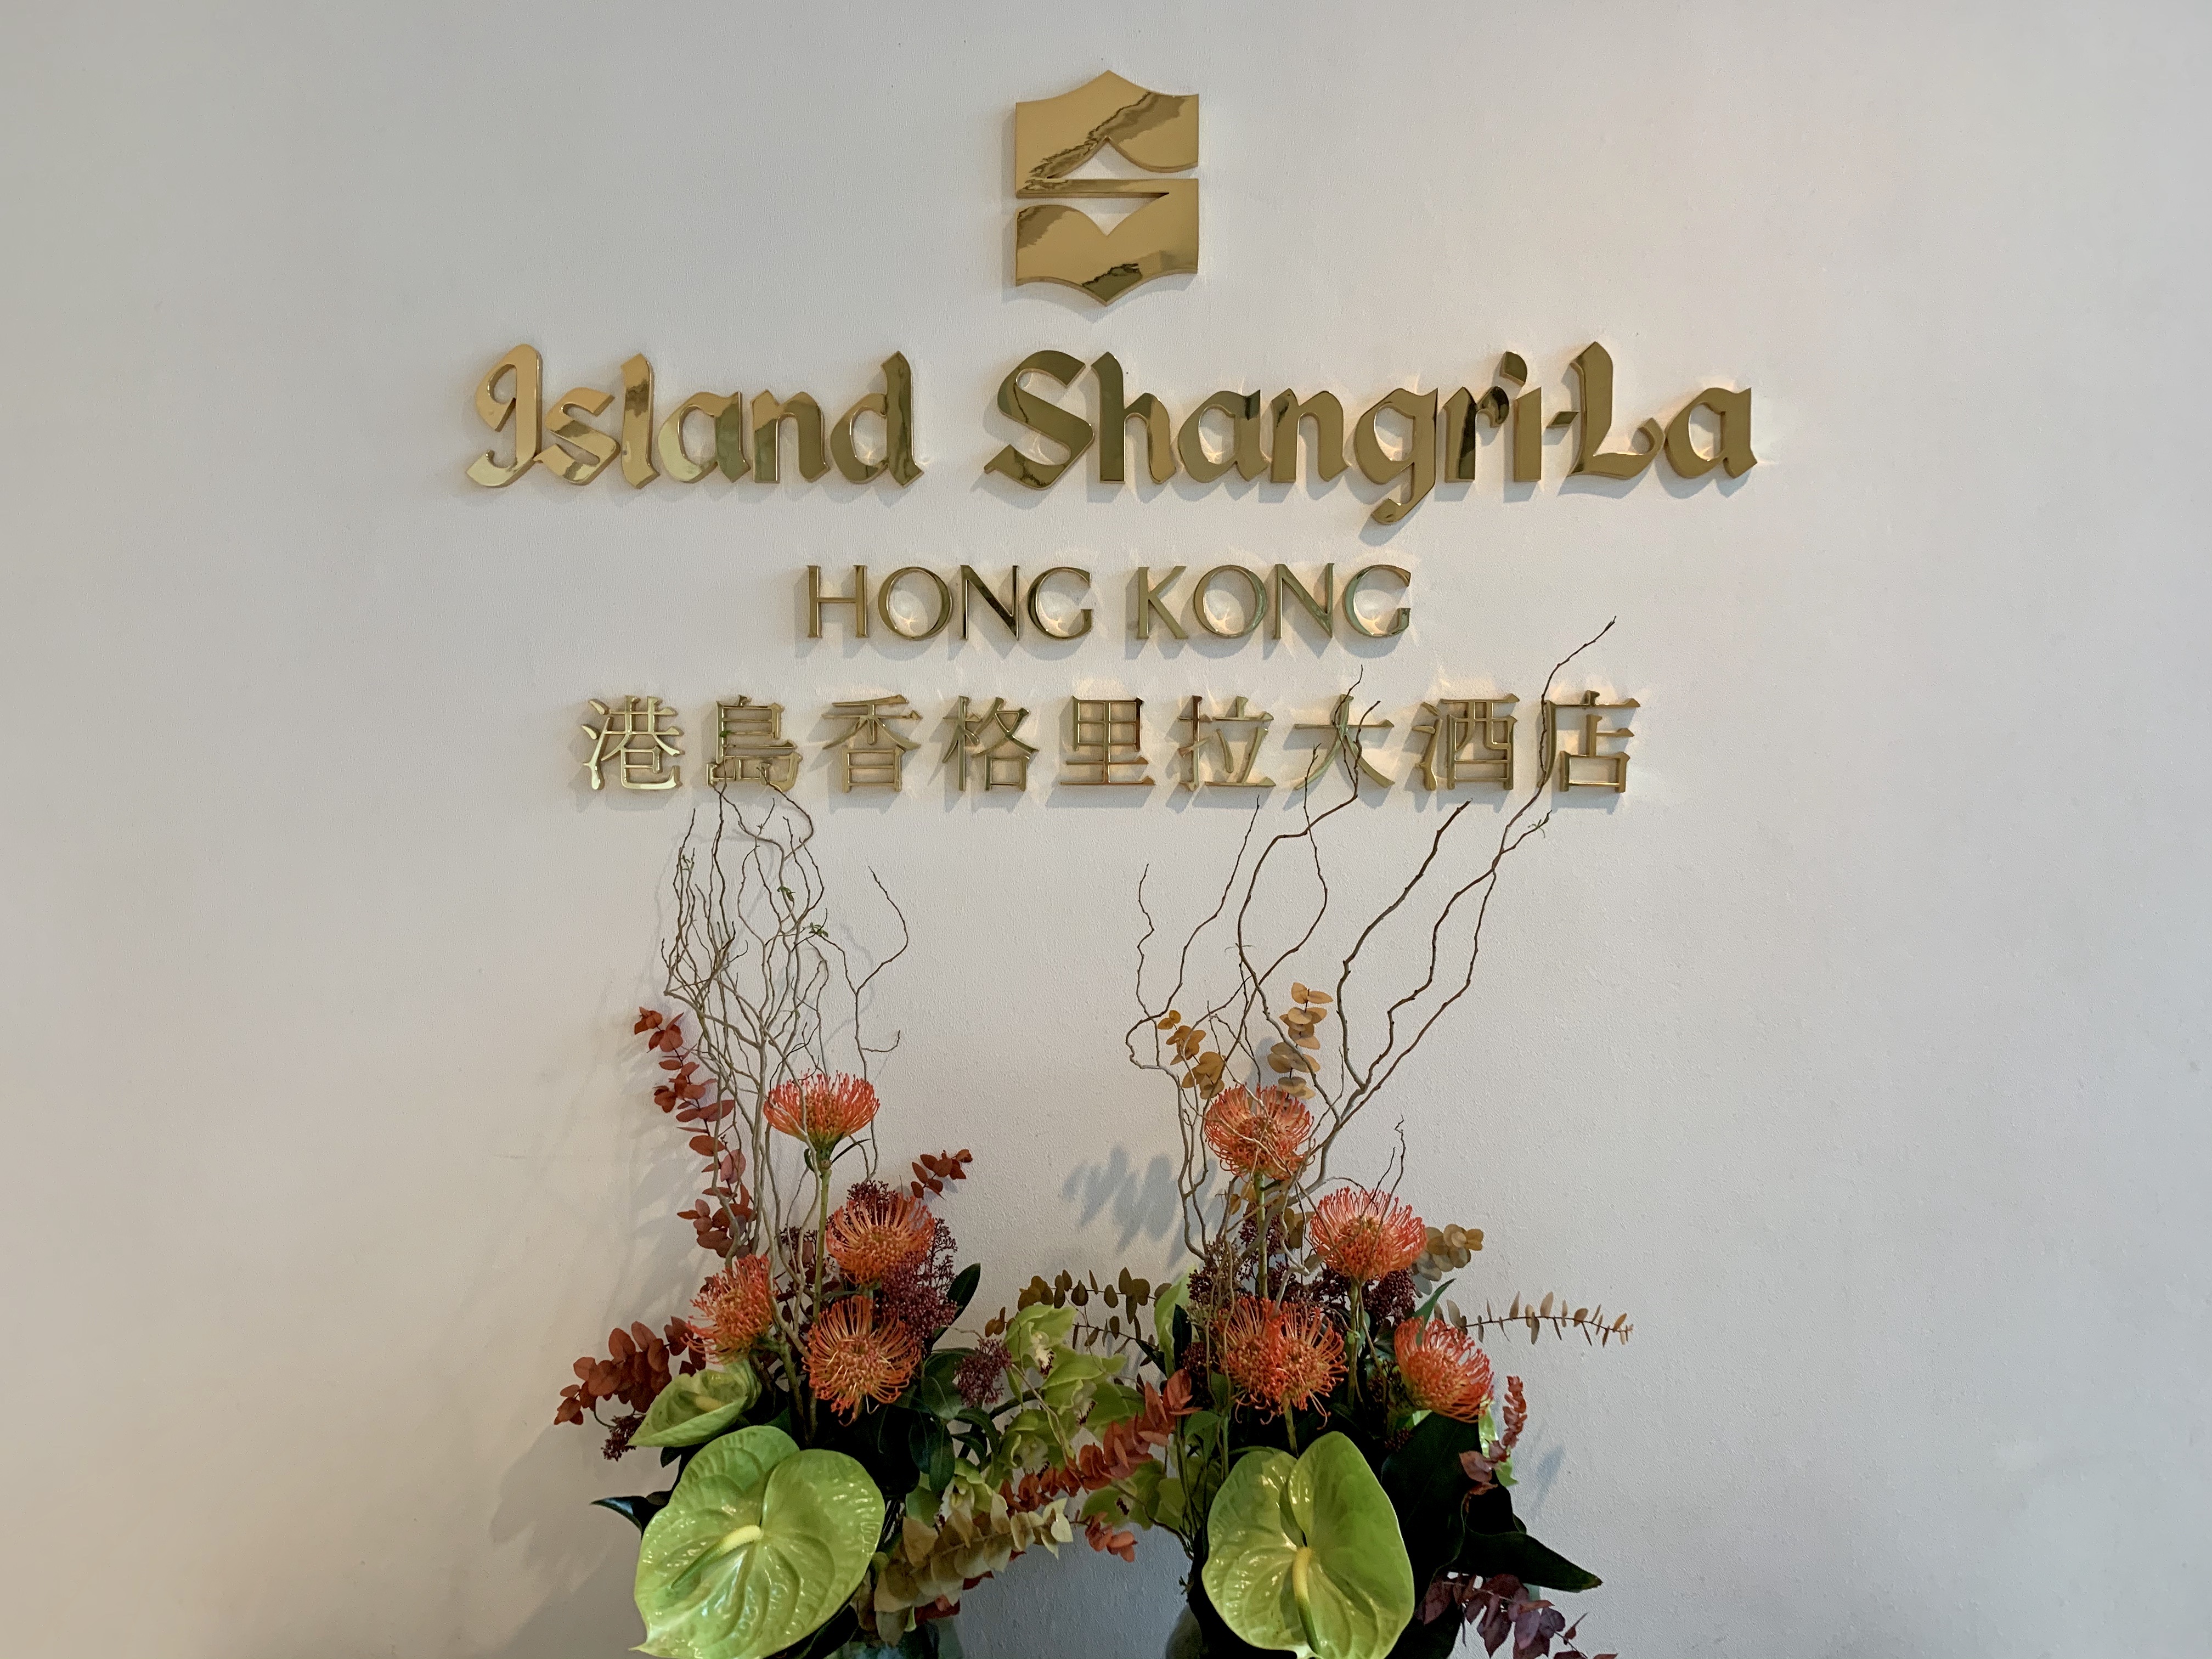 Shangri-La Hong Kong/Sydney